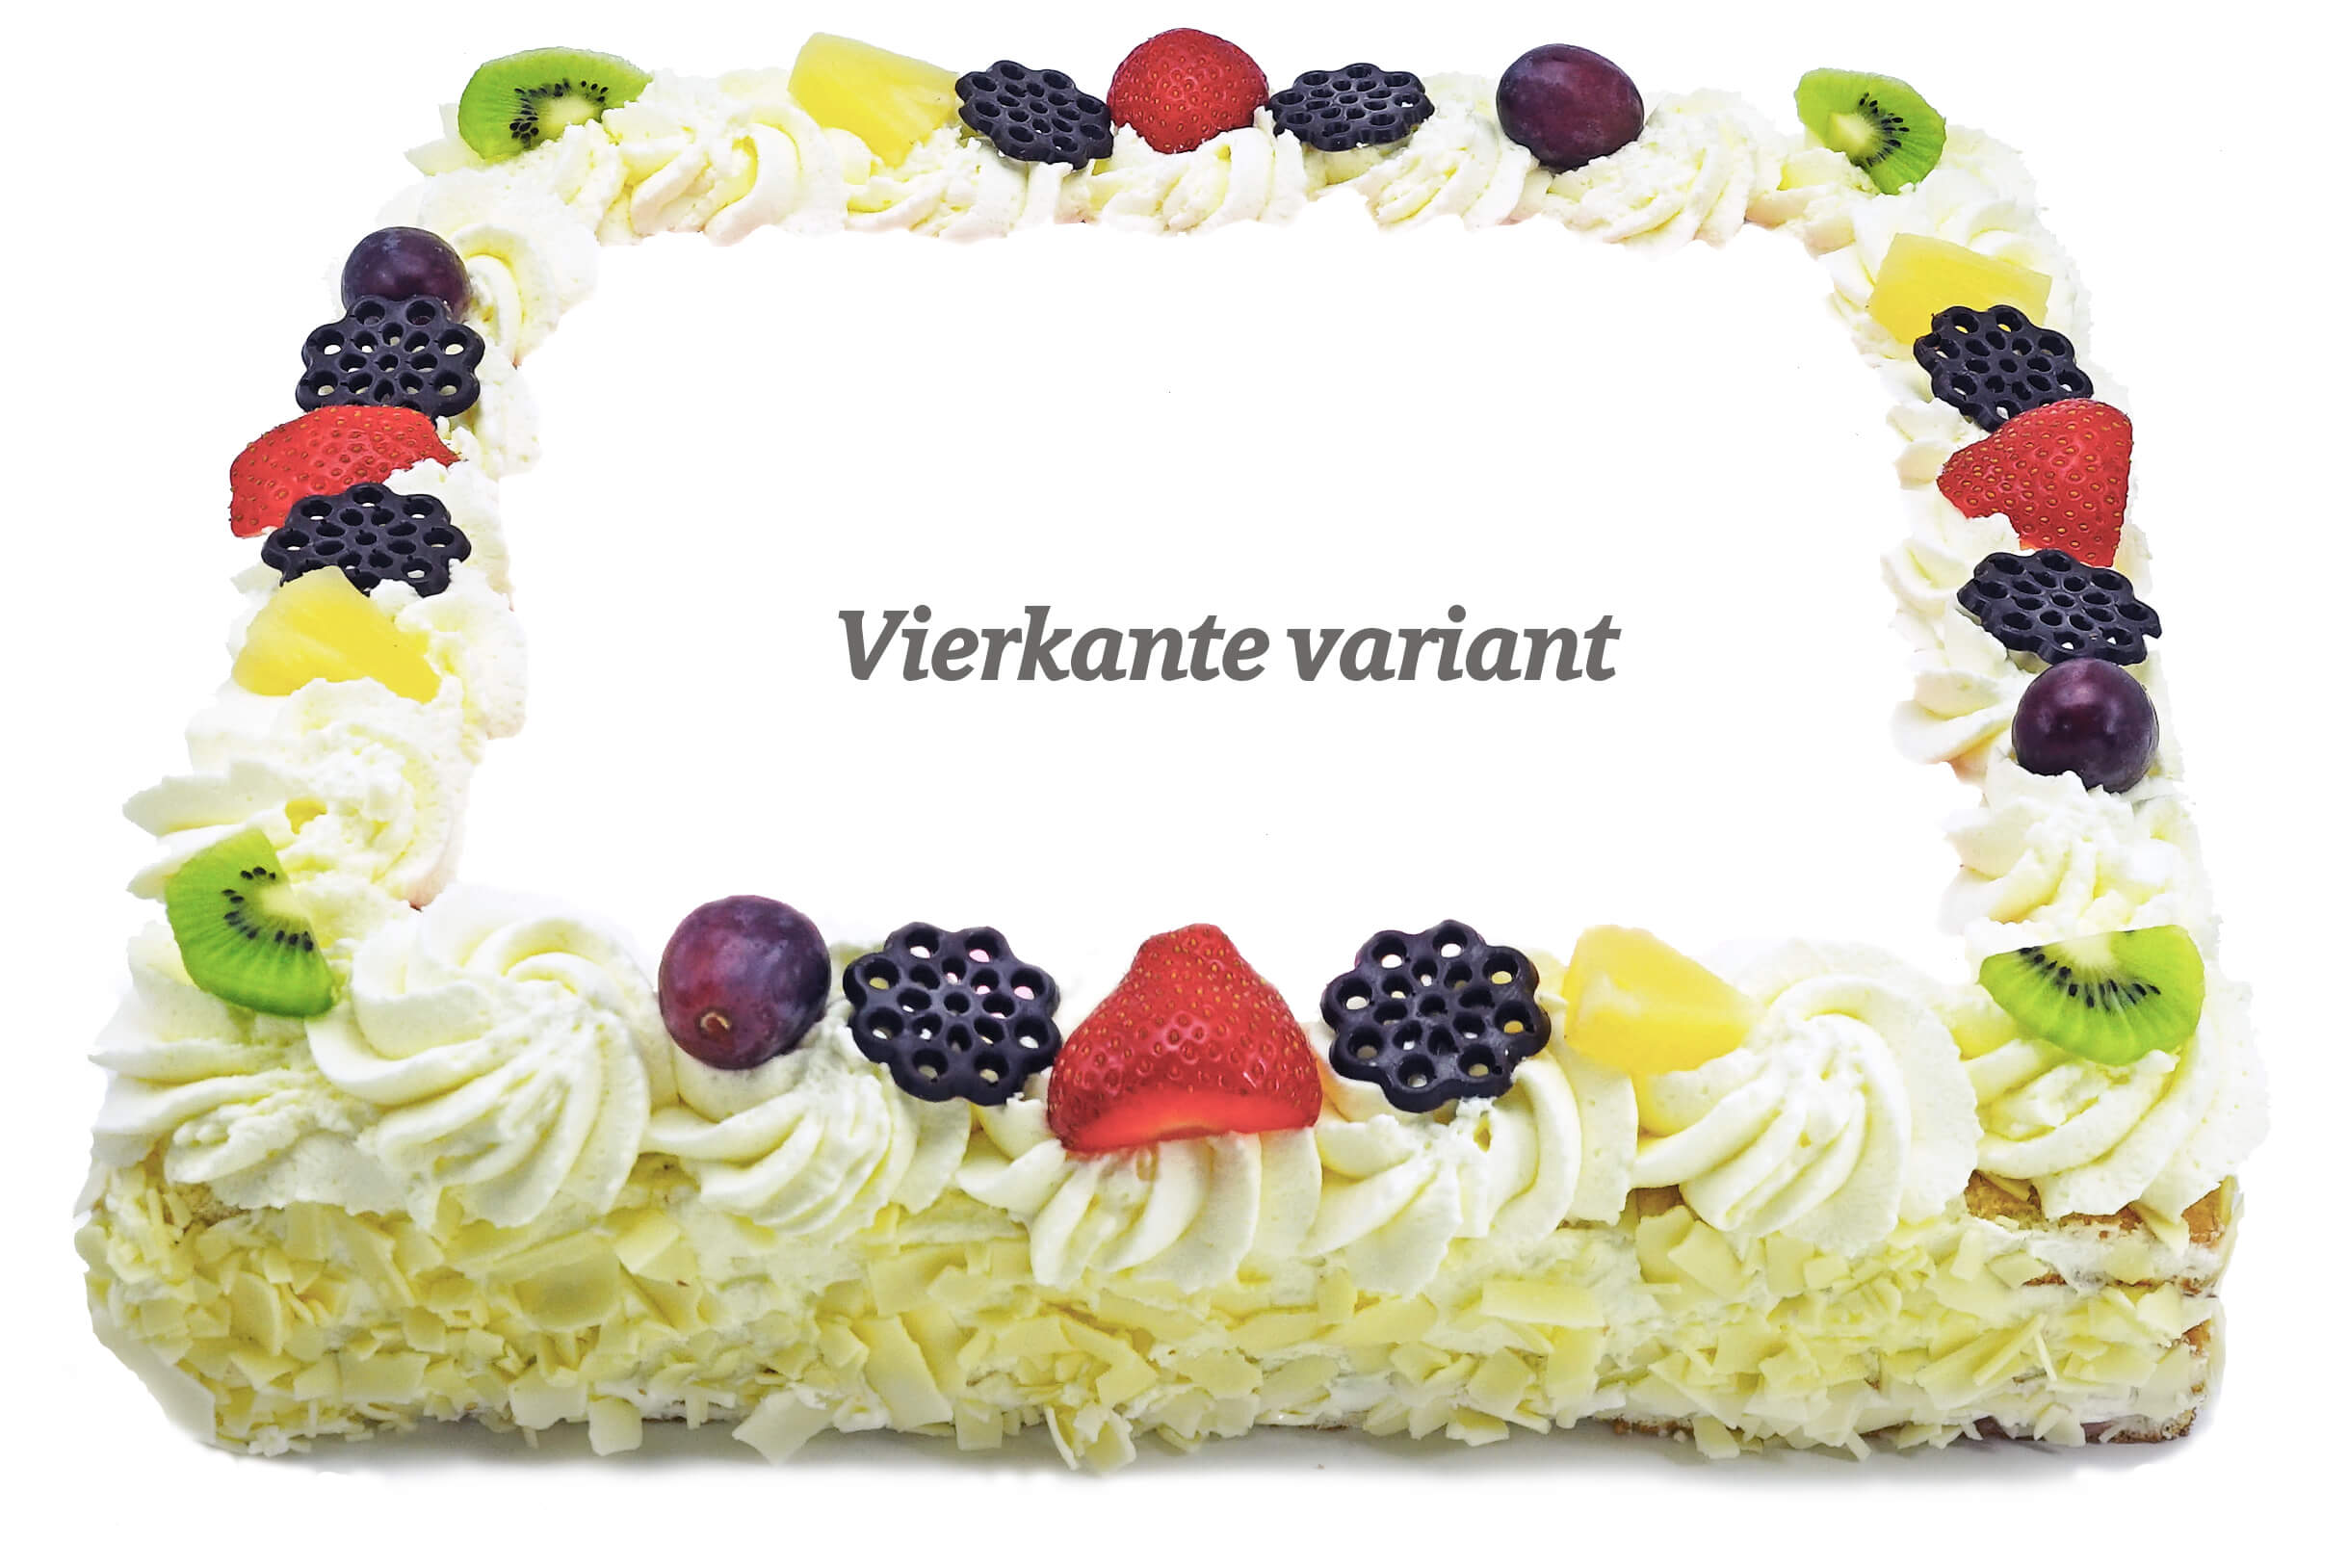 prachtig Super goed Jood foto taart bestellen bakkerij kwakman - bakkerijkwakman.nl